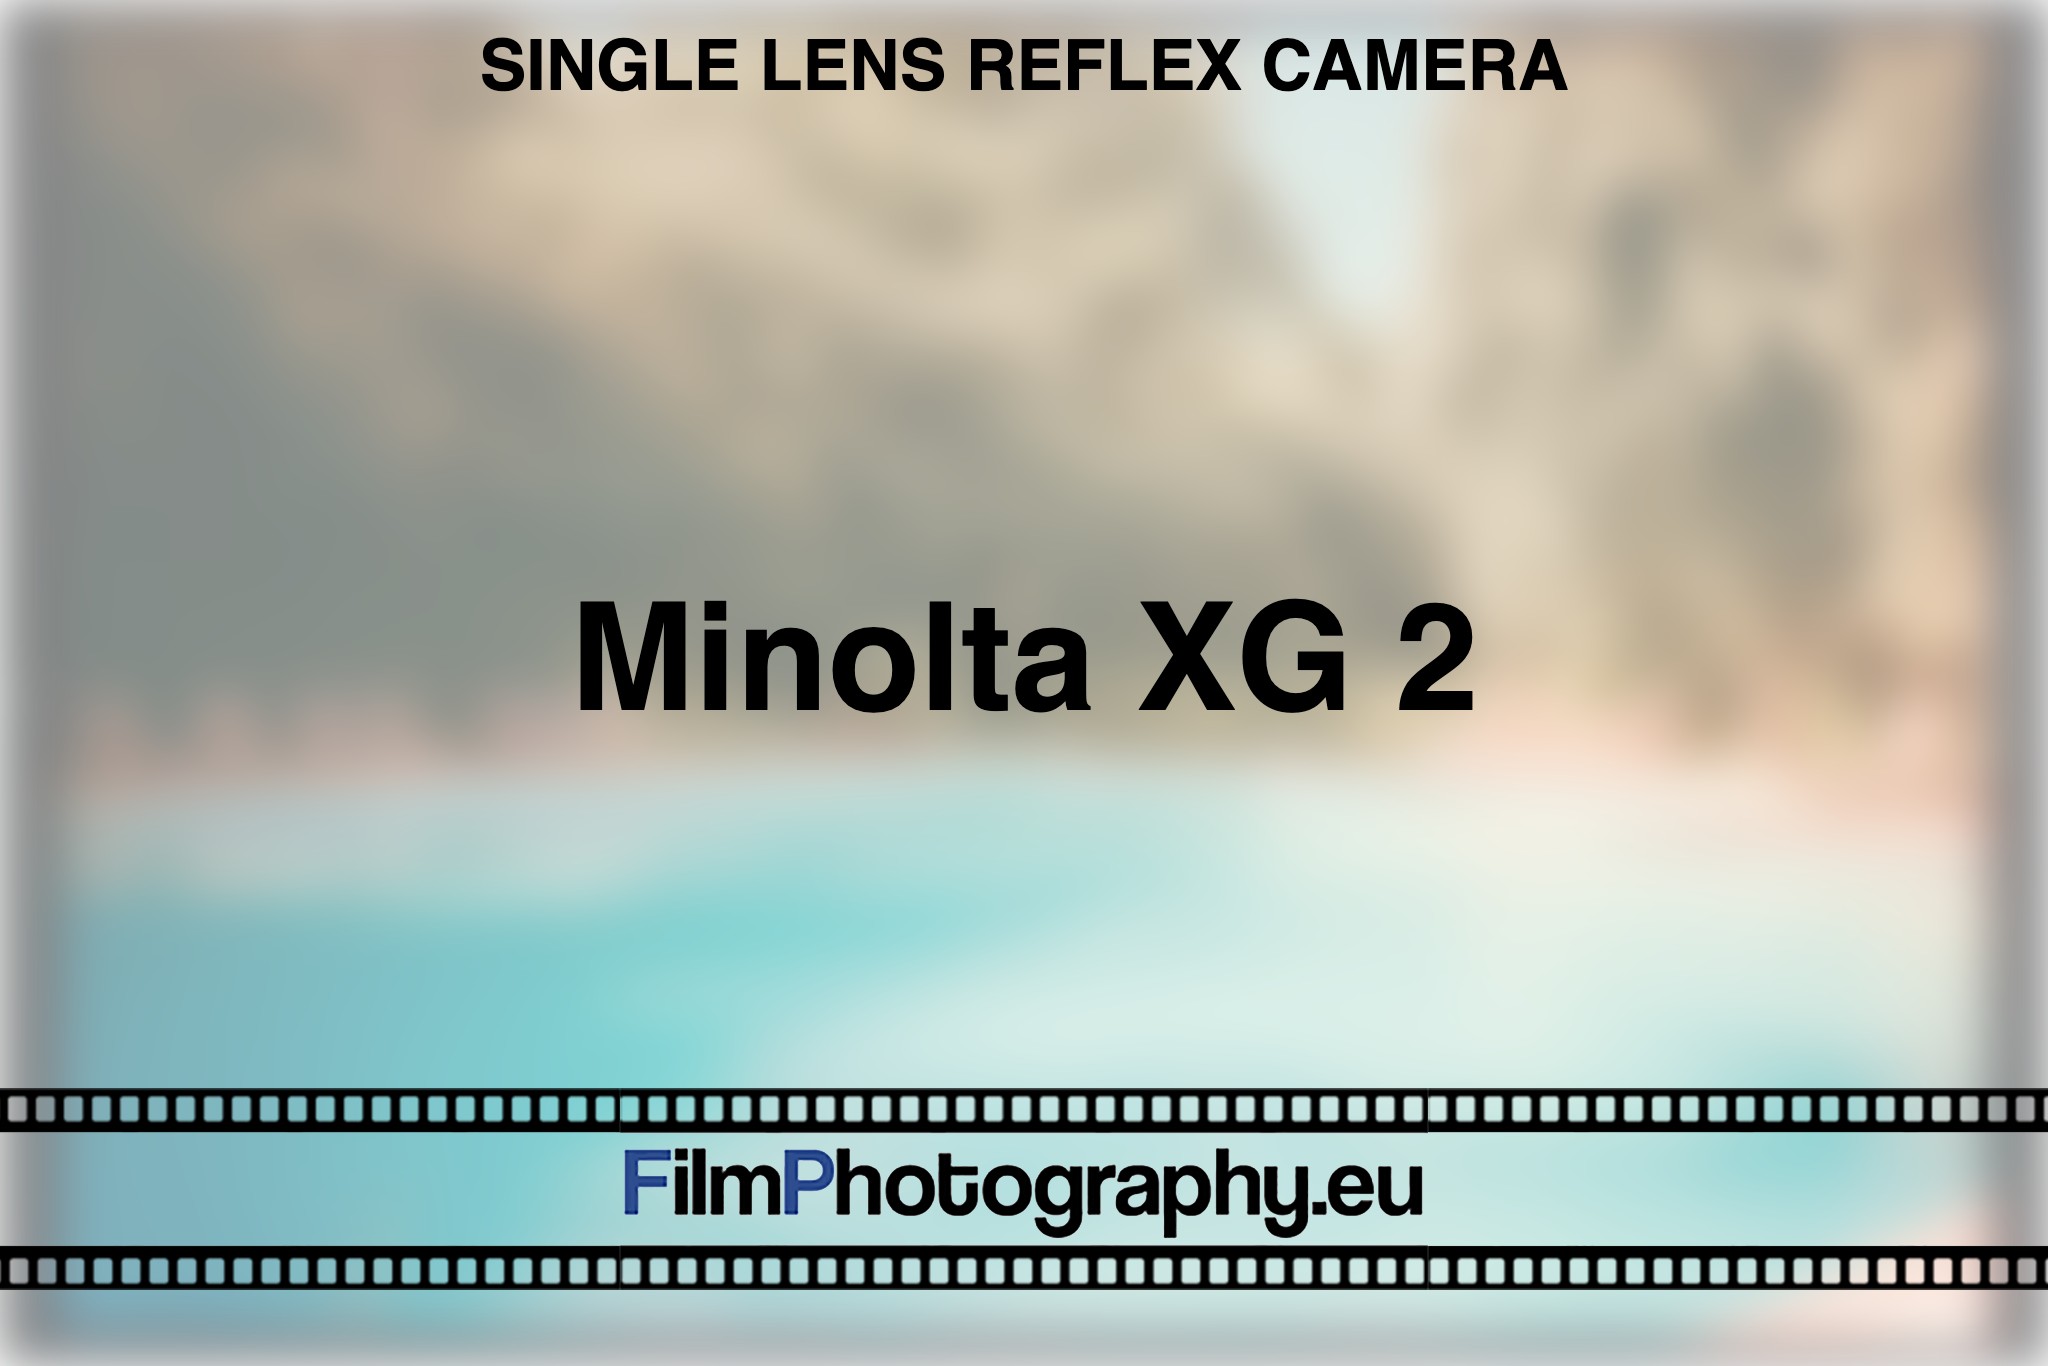 minolta-xg-2-single-lens-reflex-camera-bnv